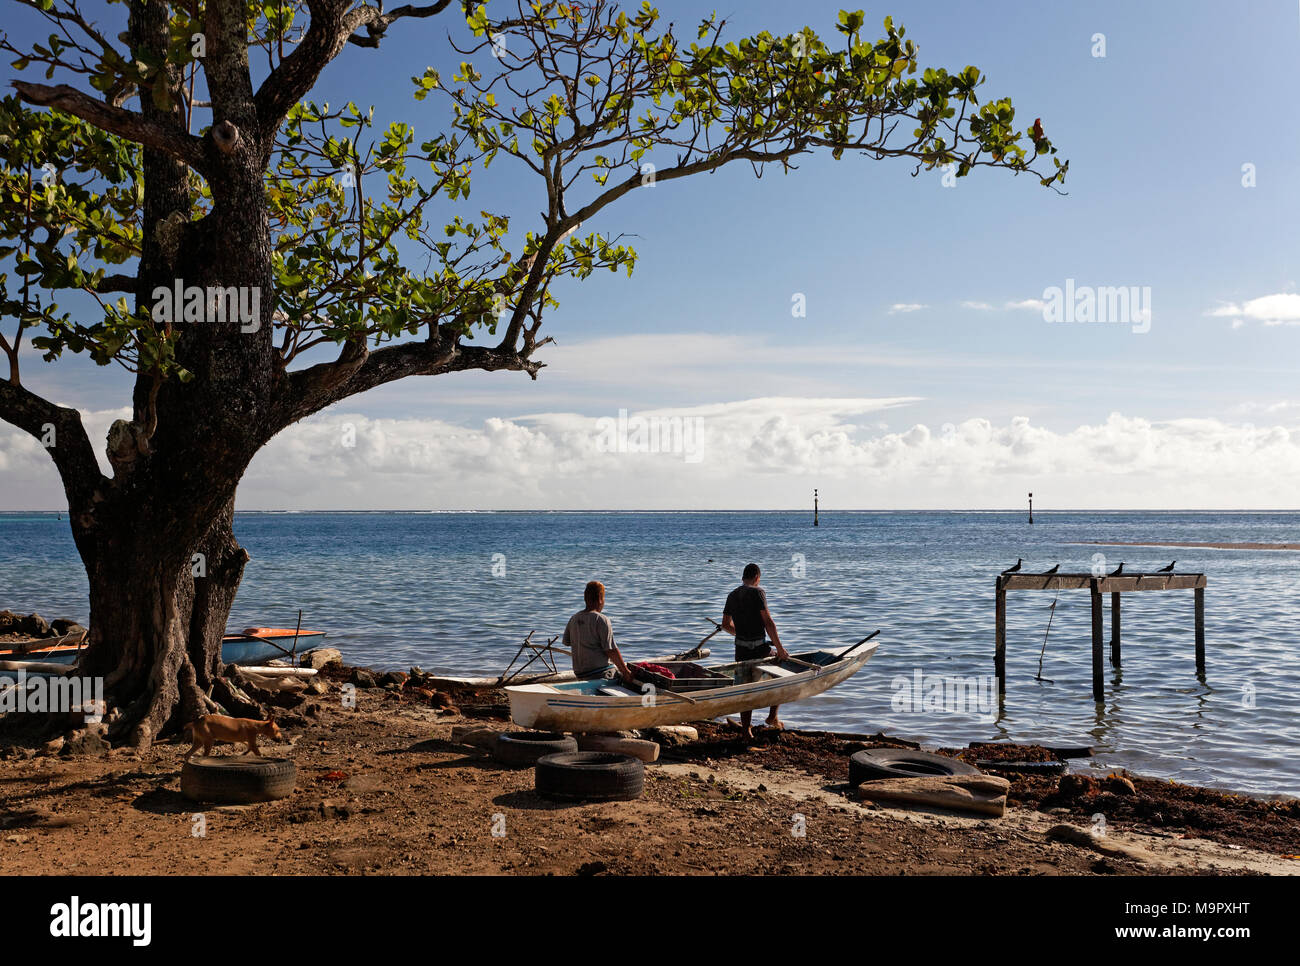 Deux hommes, les Polynésiens, les bateaux de pêche avec des potences dans la mer, l'océan Pacifique, Moorea, îles de la société, 98728 Papetoai près de Banque D'Images